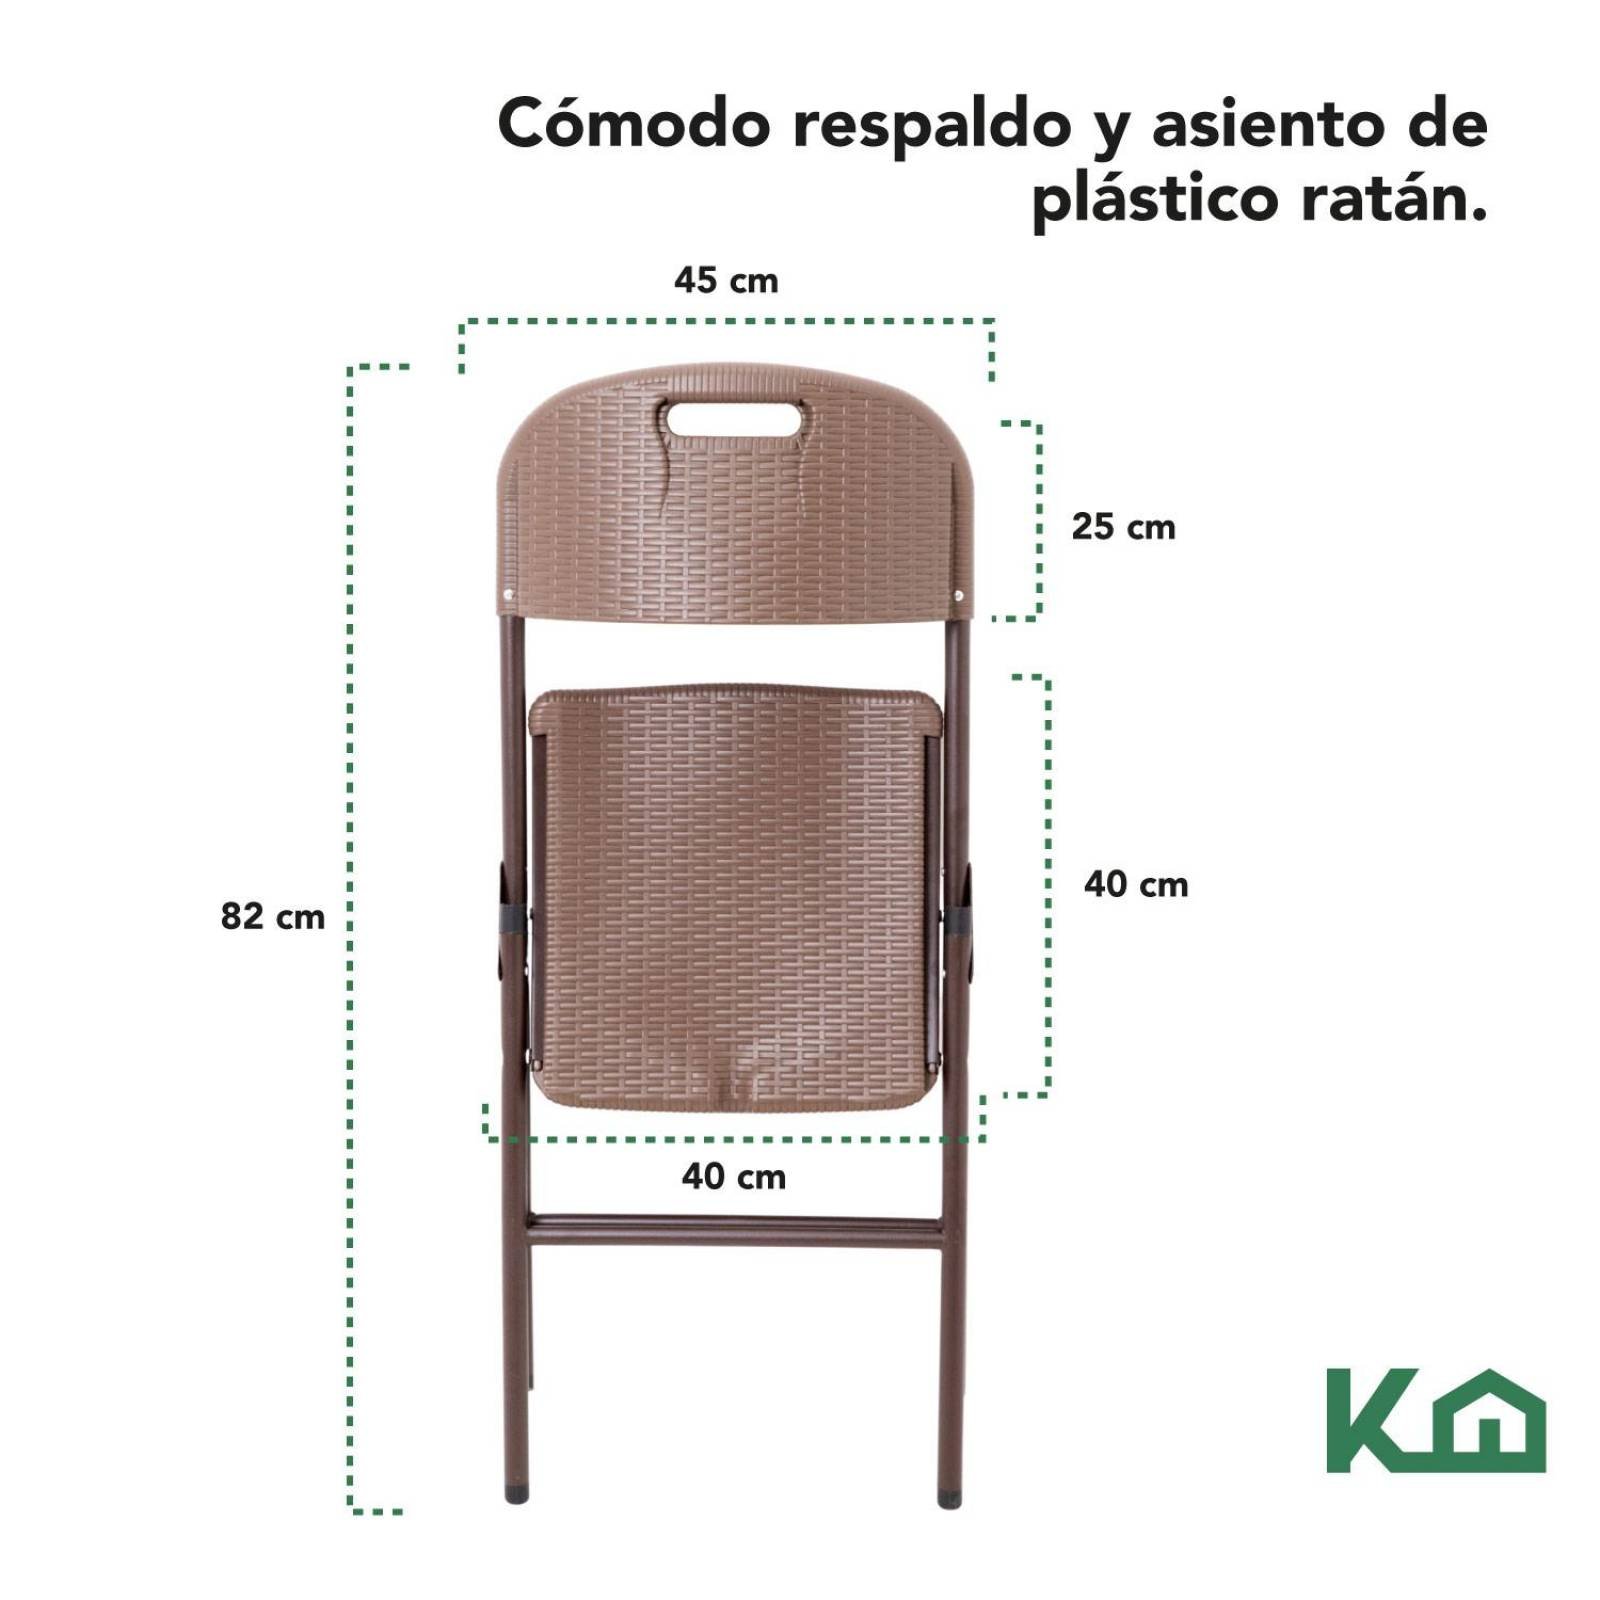 Alquileres Festa - Confortables y resistentes, estas sillas plegables  acolchadas de alquiler tienen las medidas justas para permitir el mayor  número de personas sentadas en el menor espacio posible. Gracias a la